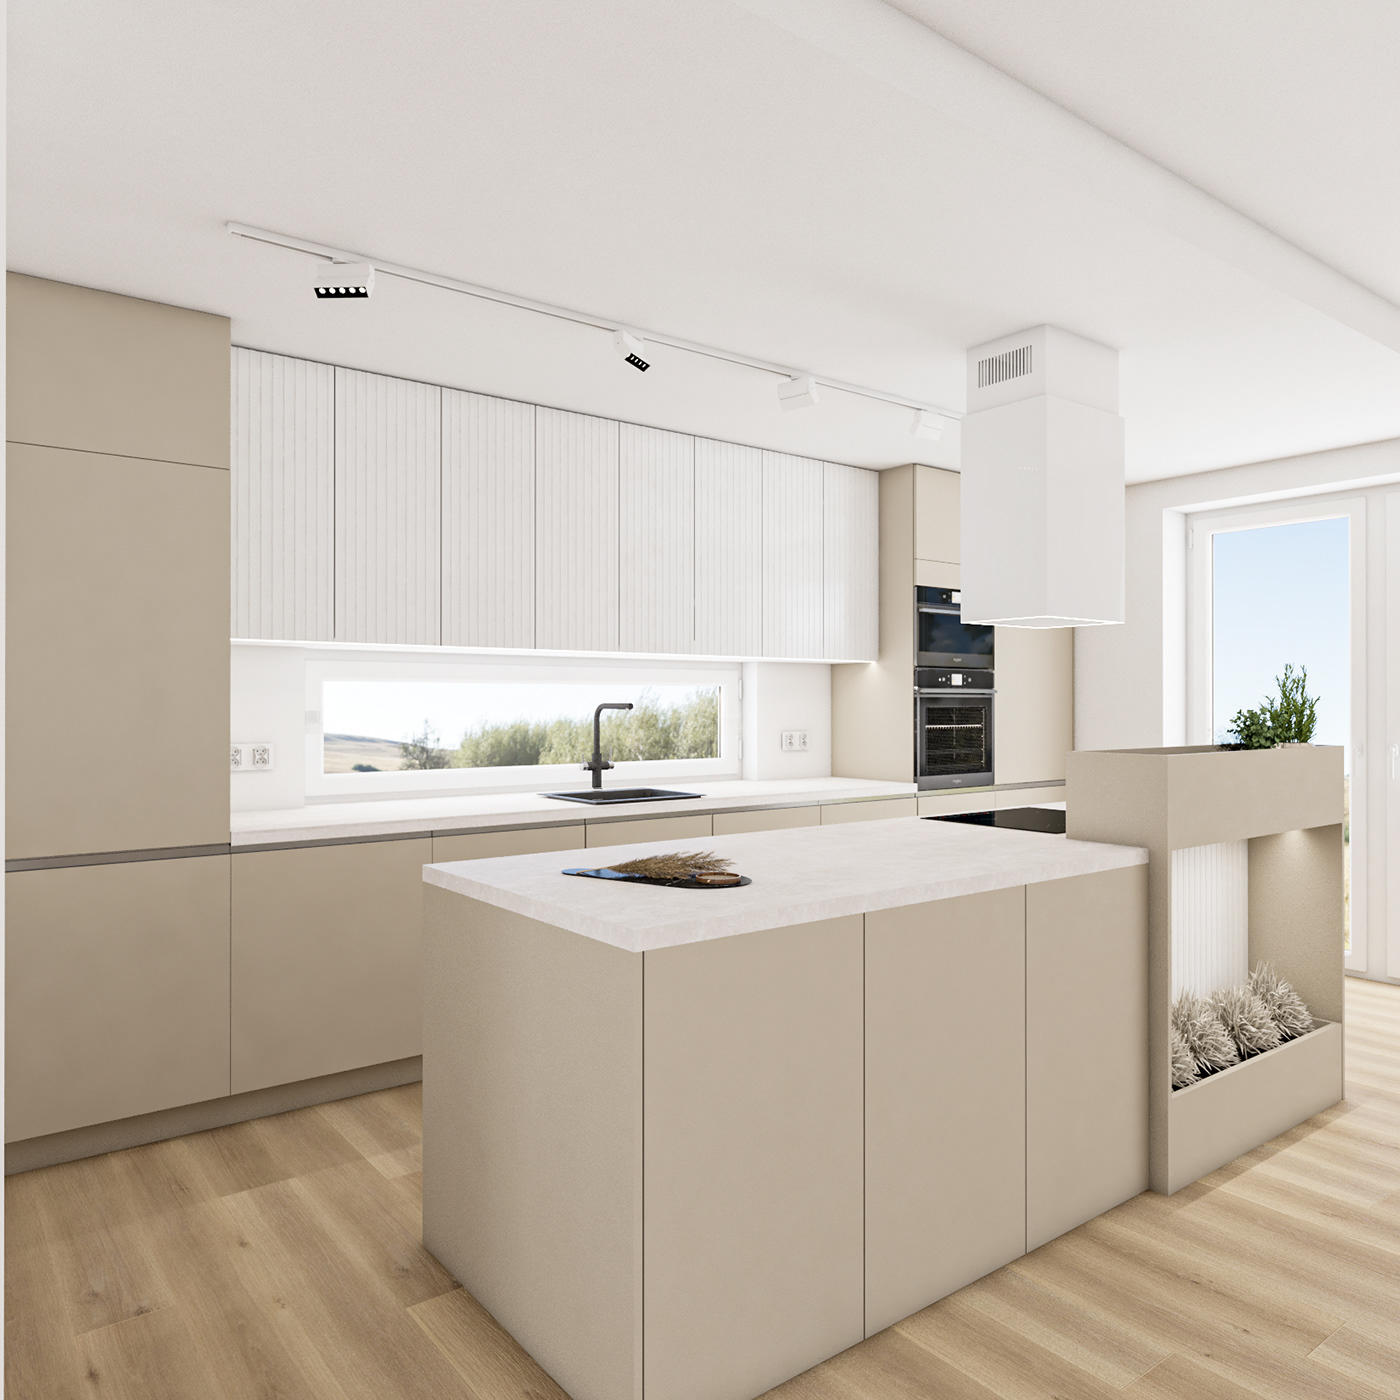 archviz interior design  kitchen kitchen design Render visualization vray